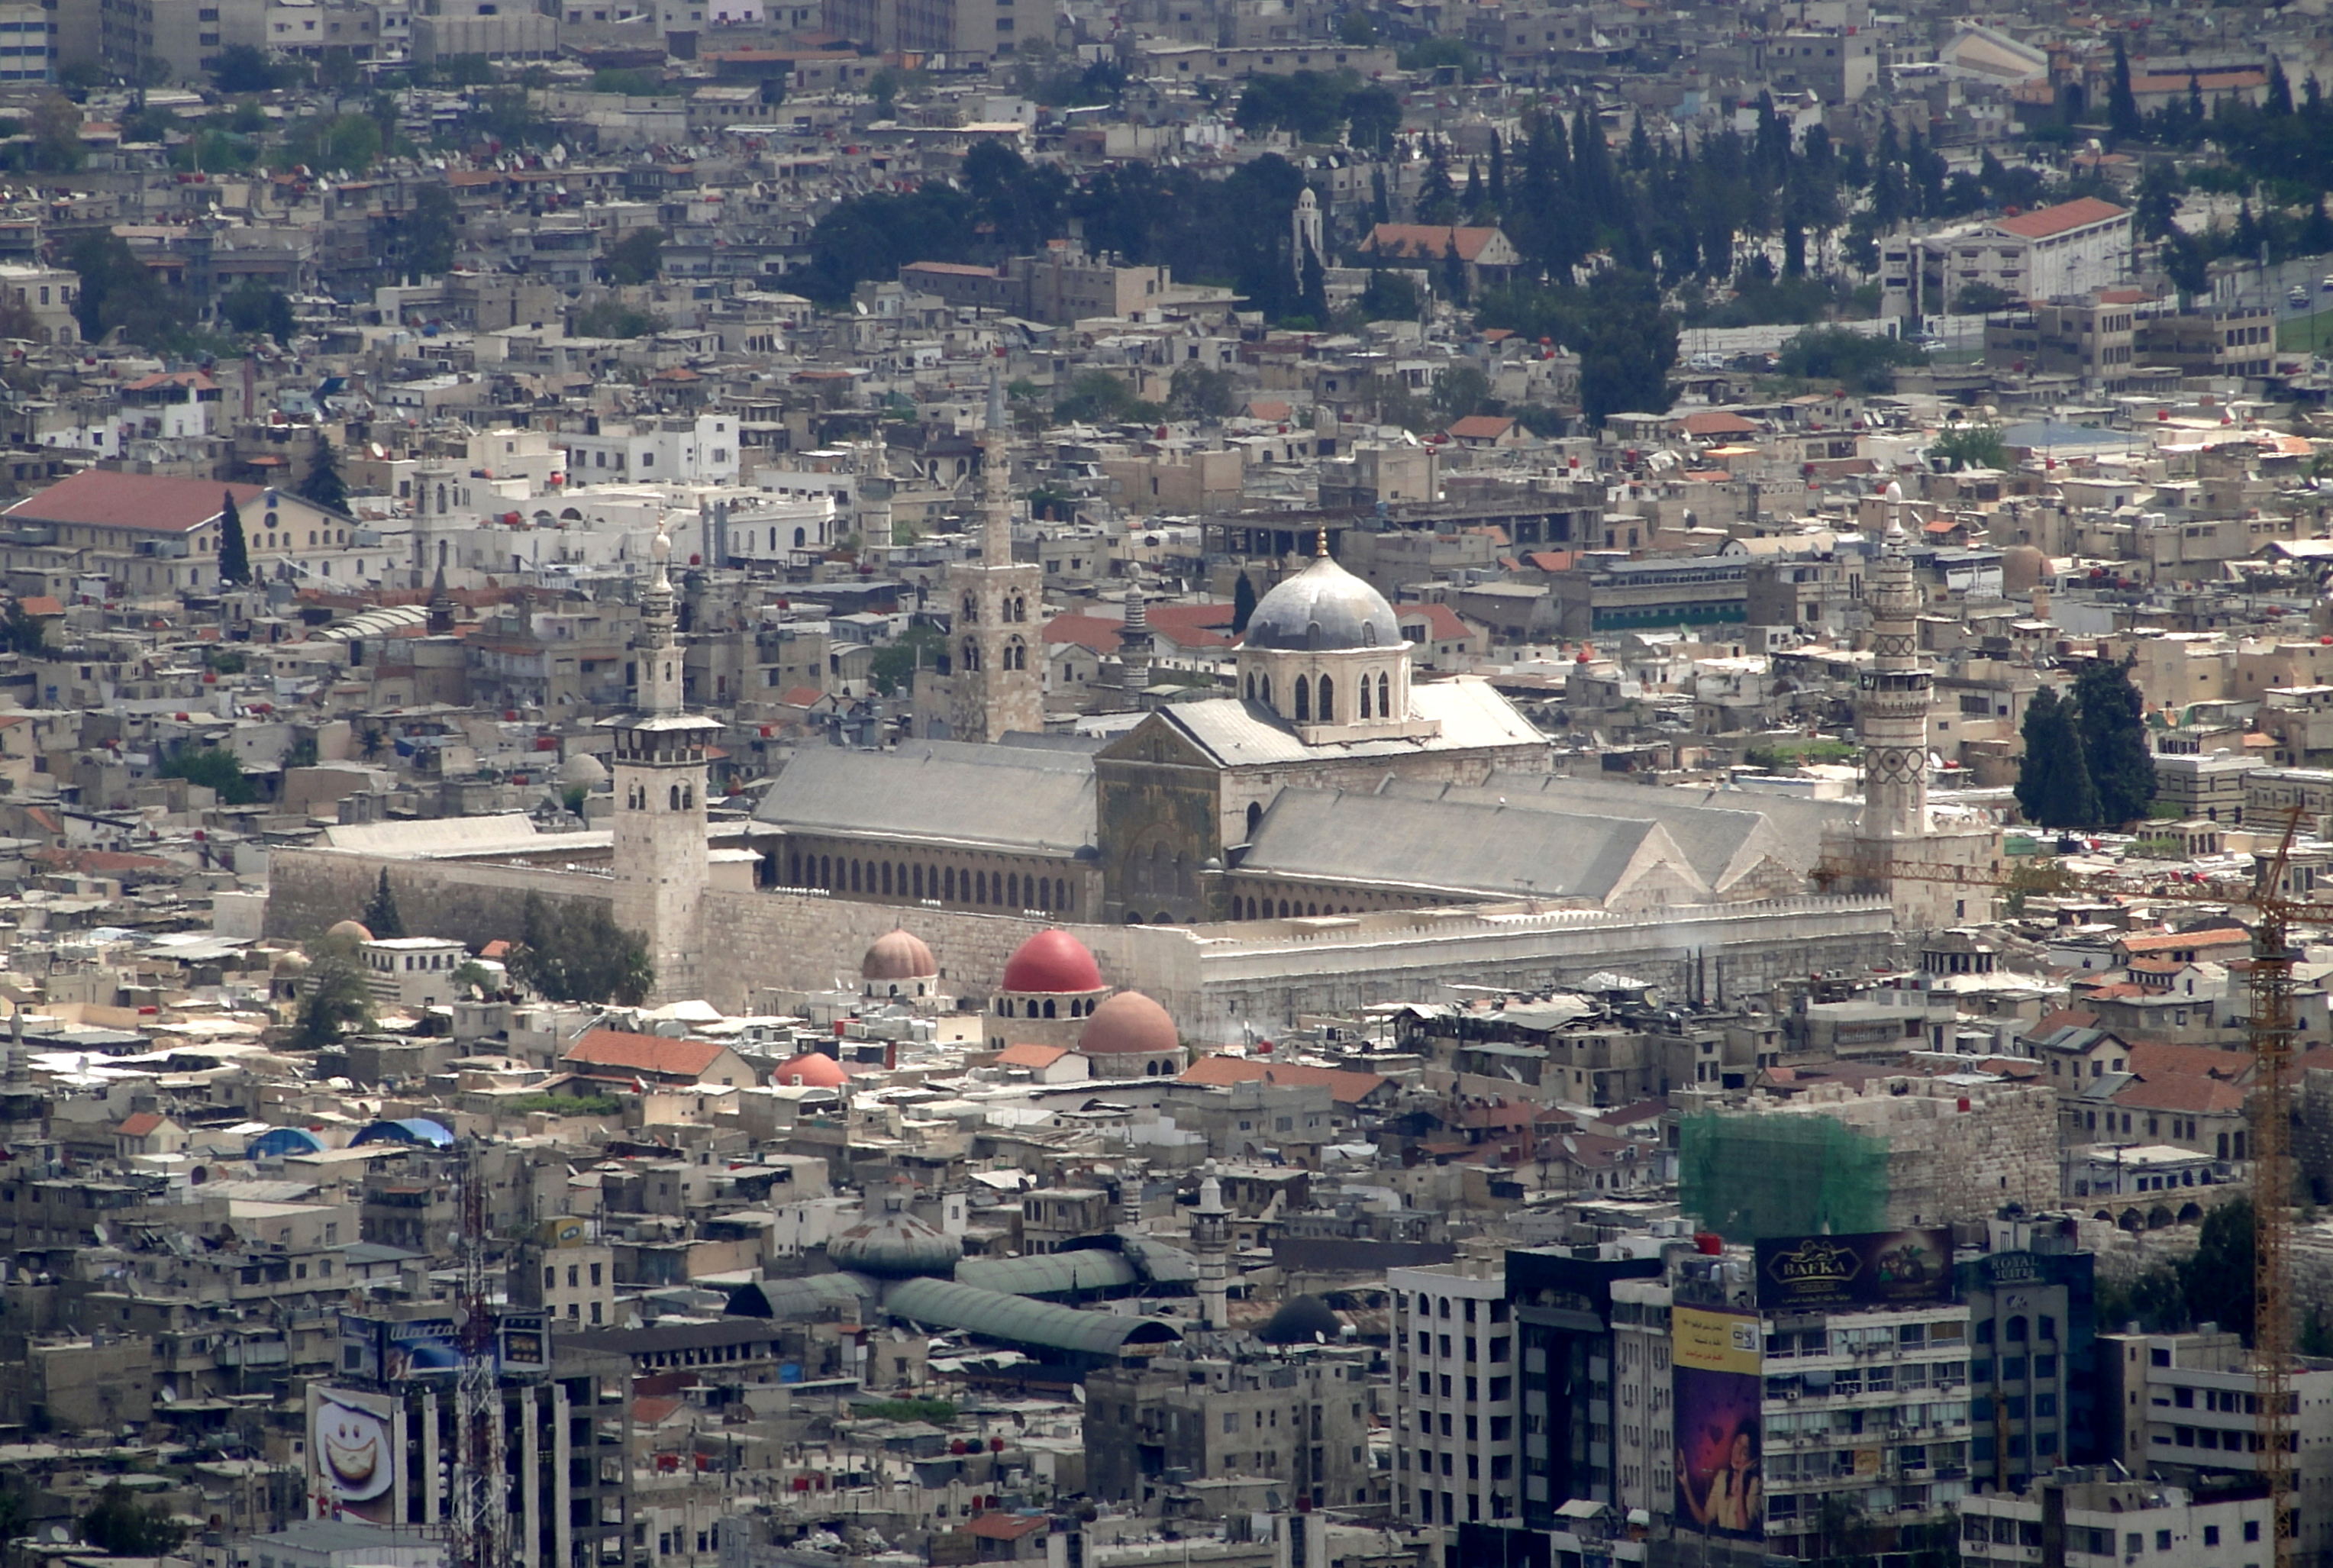 Umayyad Mosque in Damascus, Syria